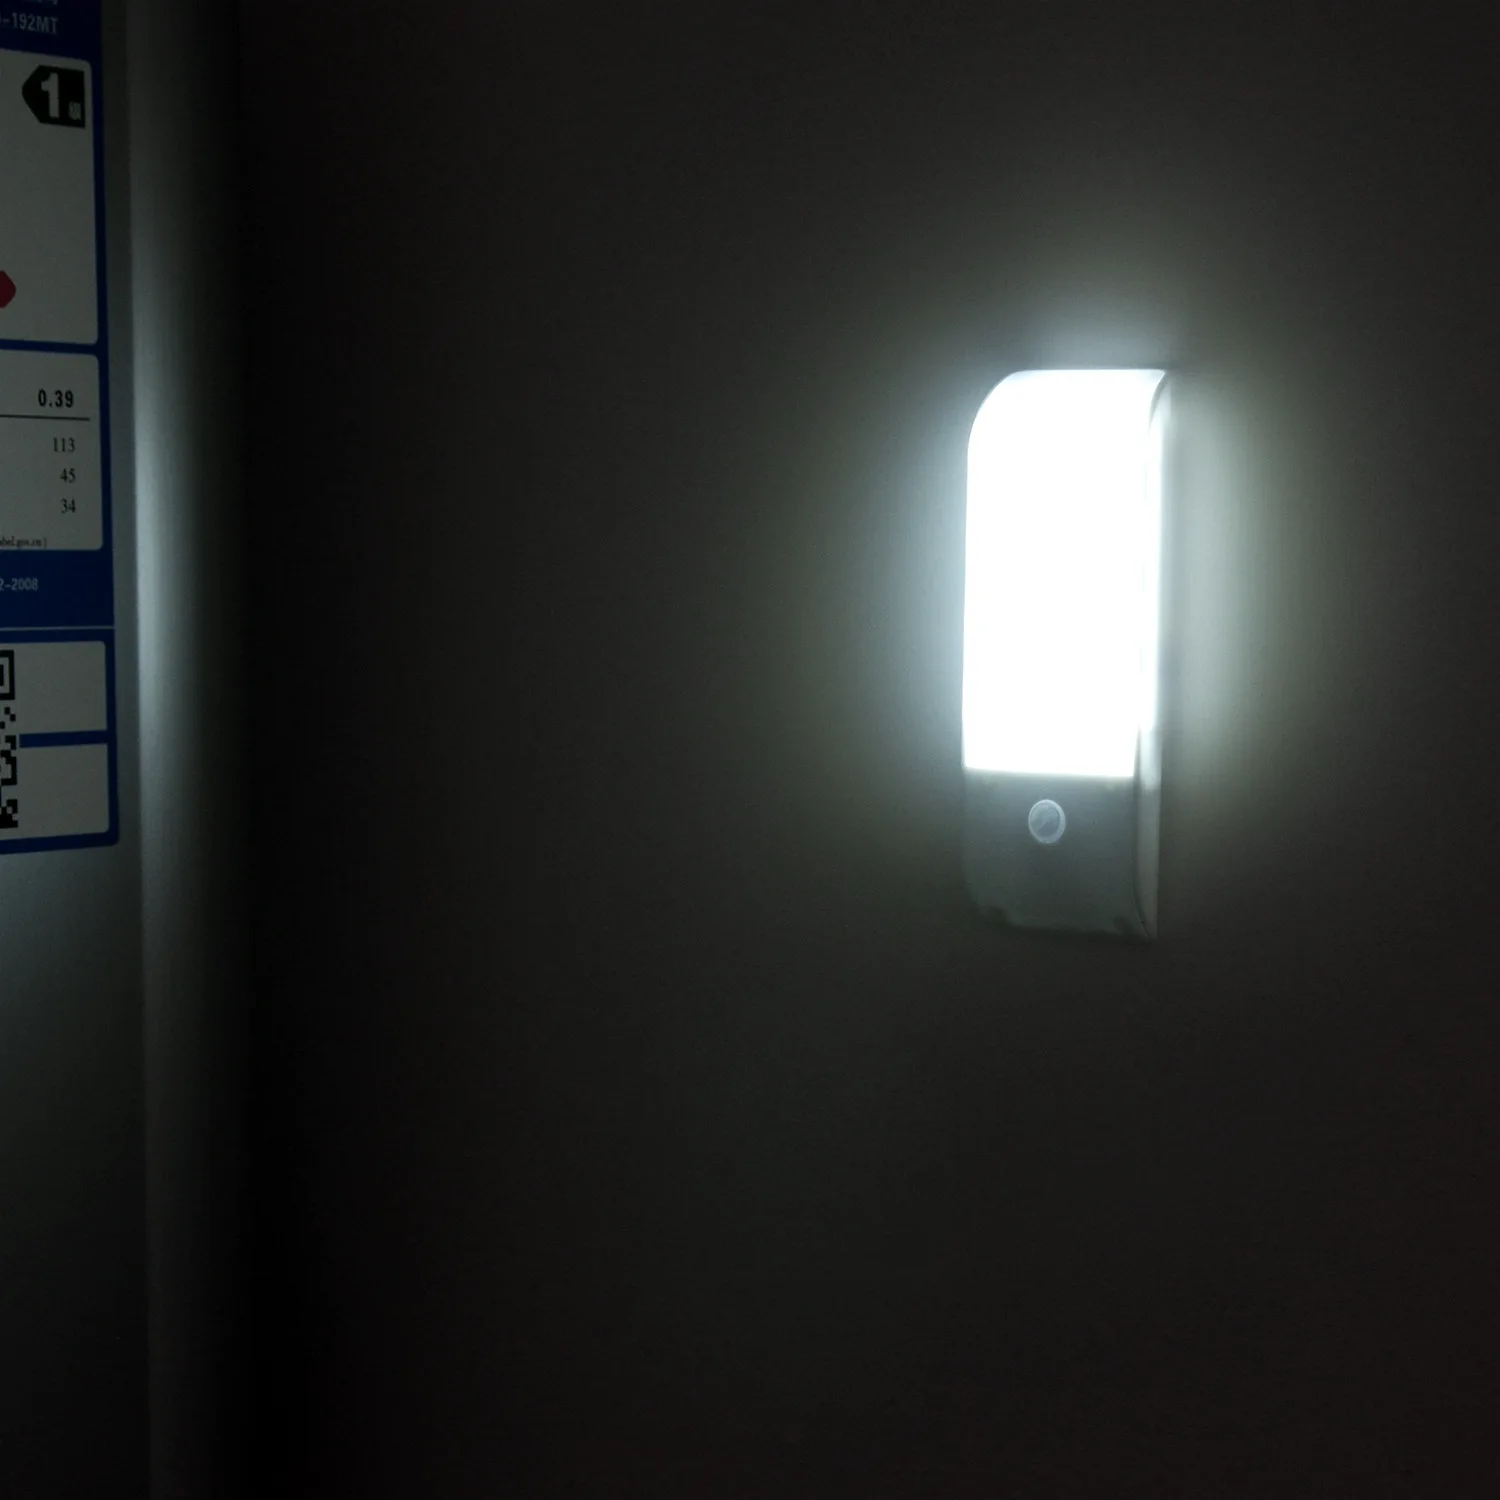 Človekove Senzor Led Nočne Luči 12 visoko svetlost SMD LED USB Baterija Polnjenje za Omaro, Vino/Čevelj, Omare, Vrata, Luč